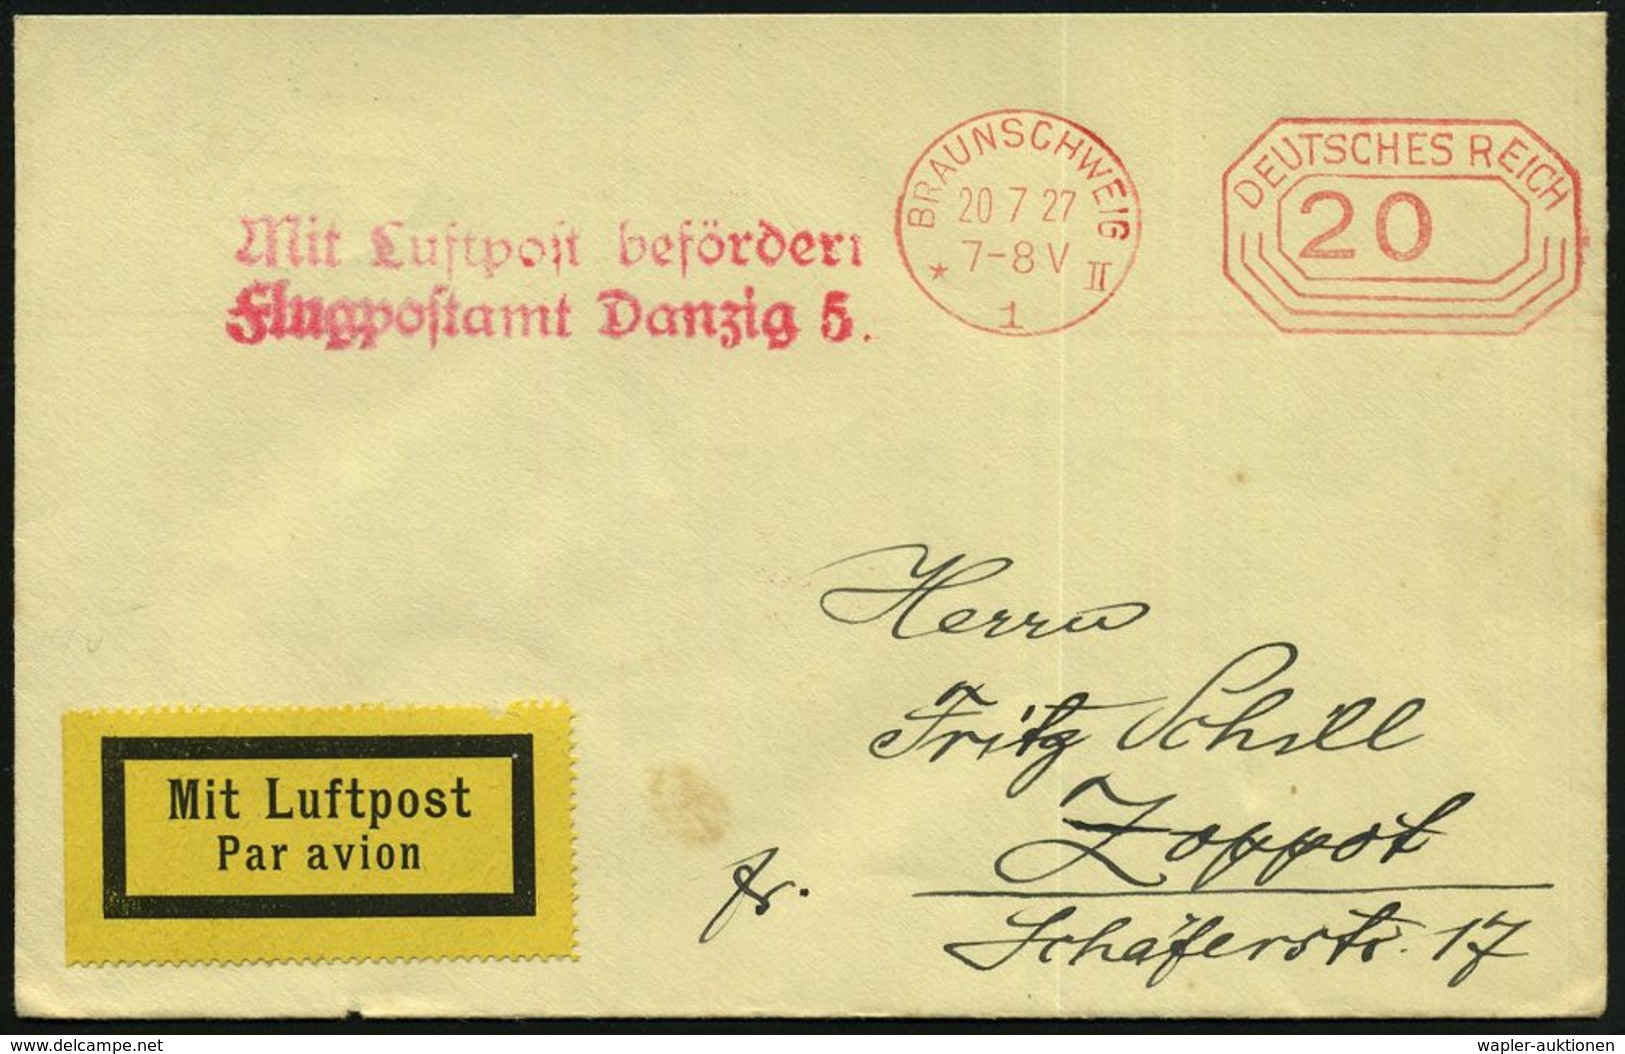 DEUTSCHE FLUGBESTÄTIGUNGSSTEMPEL : Danzig 5 1927 (20.7.) Roter 2L: Mit Luftpost Befördert/ Flugpostamt Danzig 5. (Mi.F 2 - Other (Air)